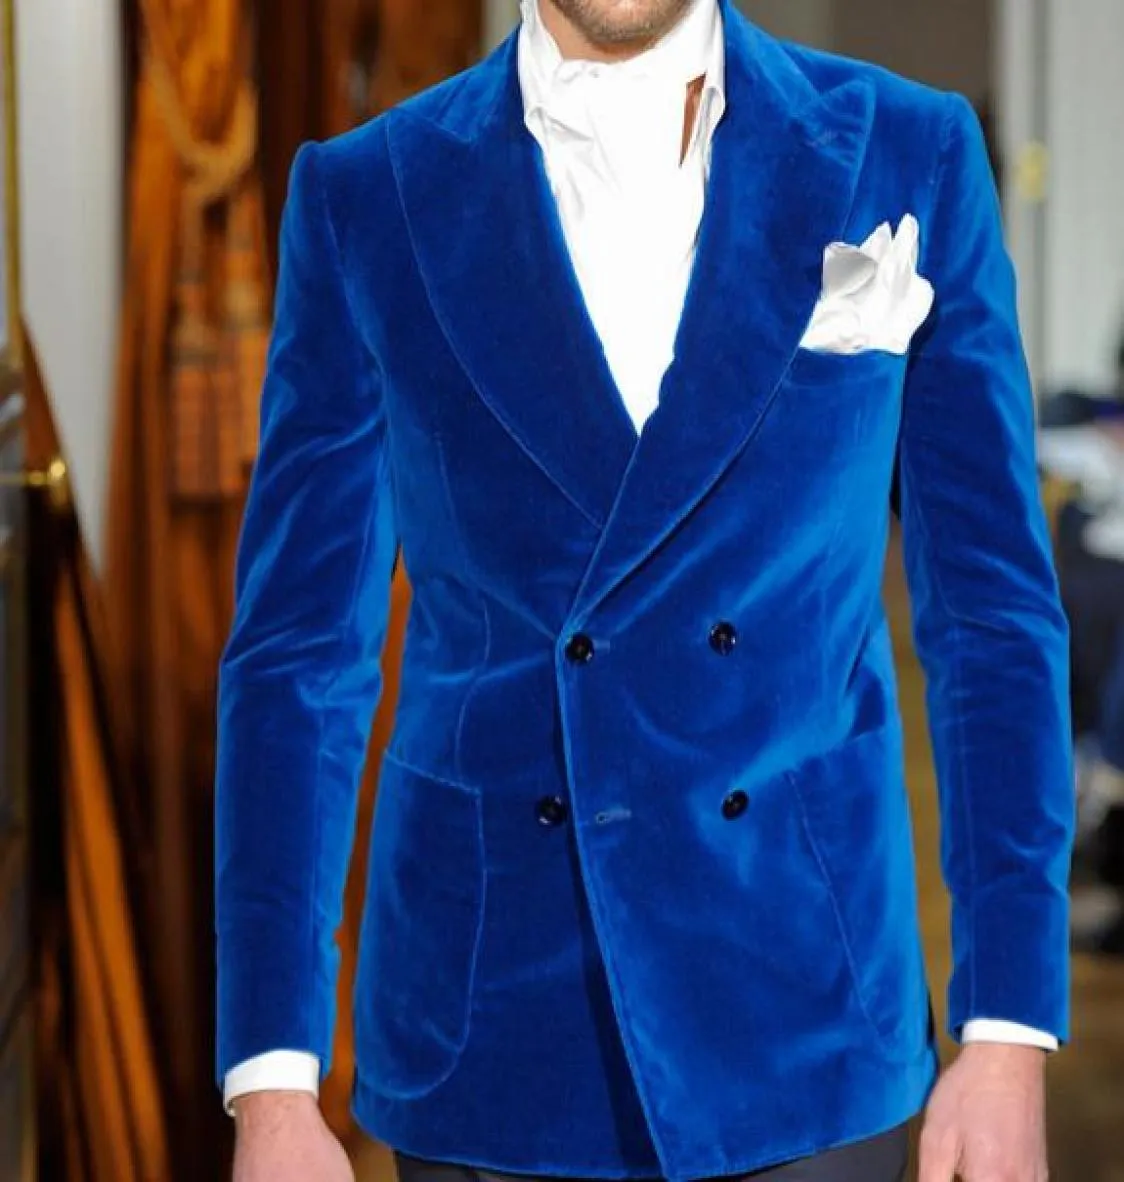 La mode Royal Blue Velvet Slim Fit Men Costumes pour le mariage Prom Prom Men Men Double Breasted Groom 2 Piece Jacket Pantal